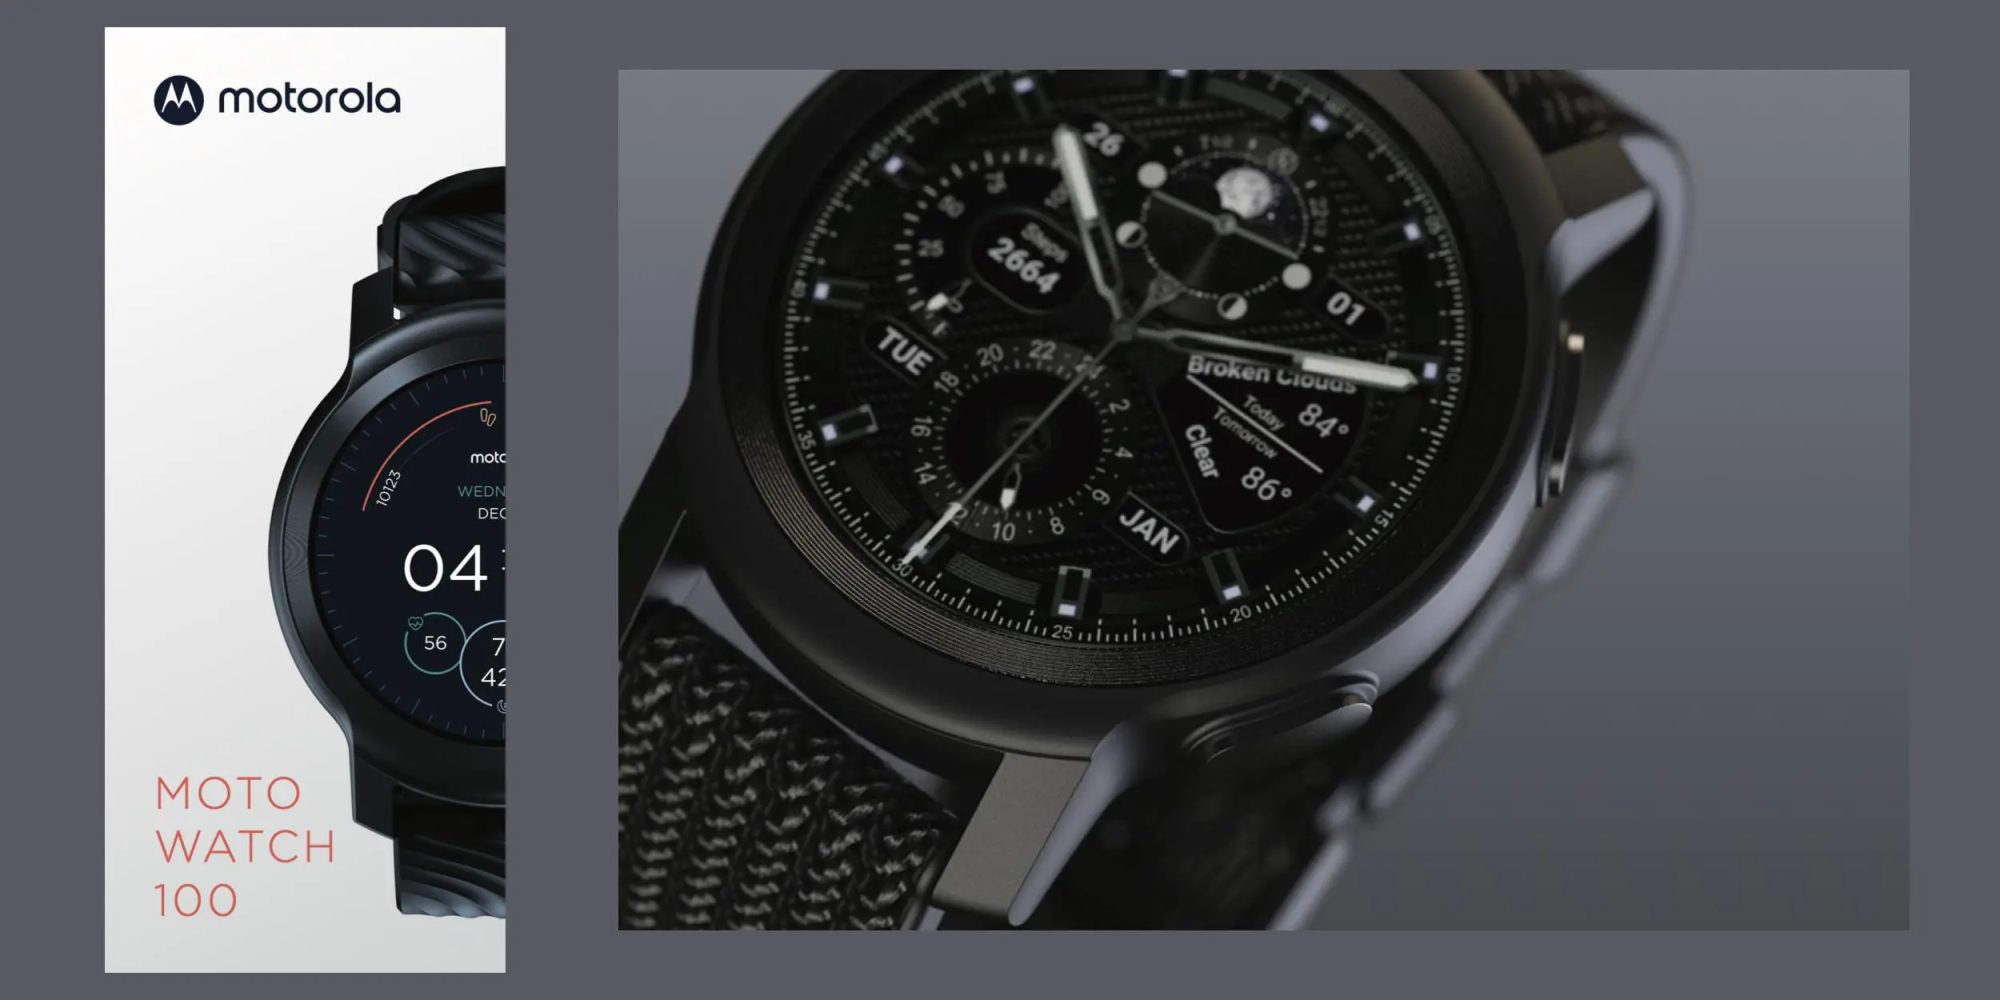 El Moto Watch 100 será el nombre del próximo smartwatch que lanzará la marca Motorola